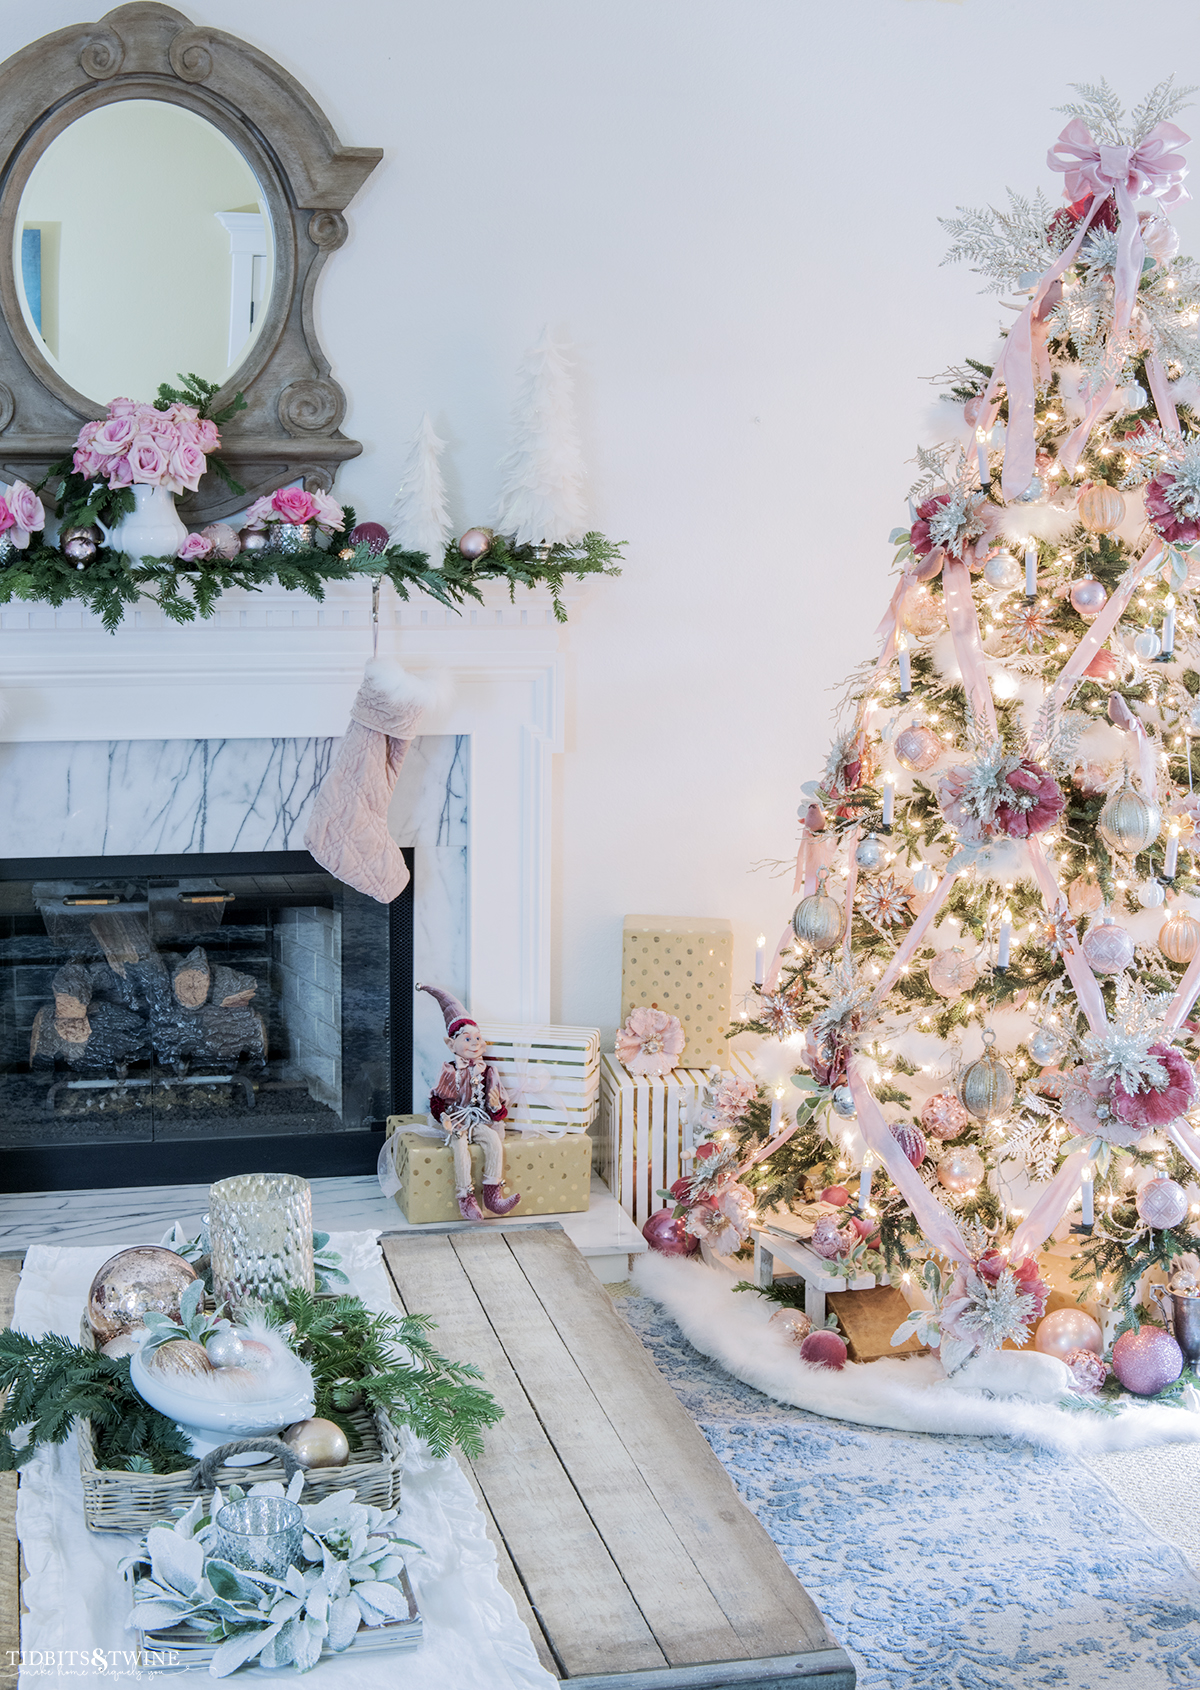 My Christmas Living Room Tour: Soft Pinks